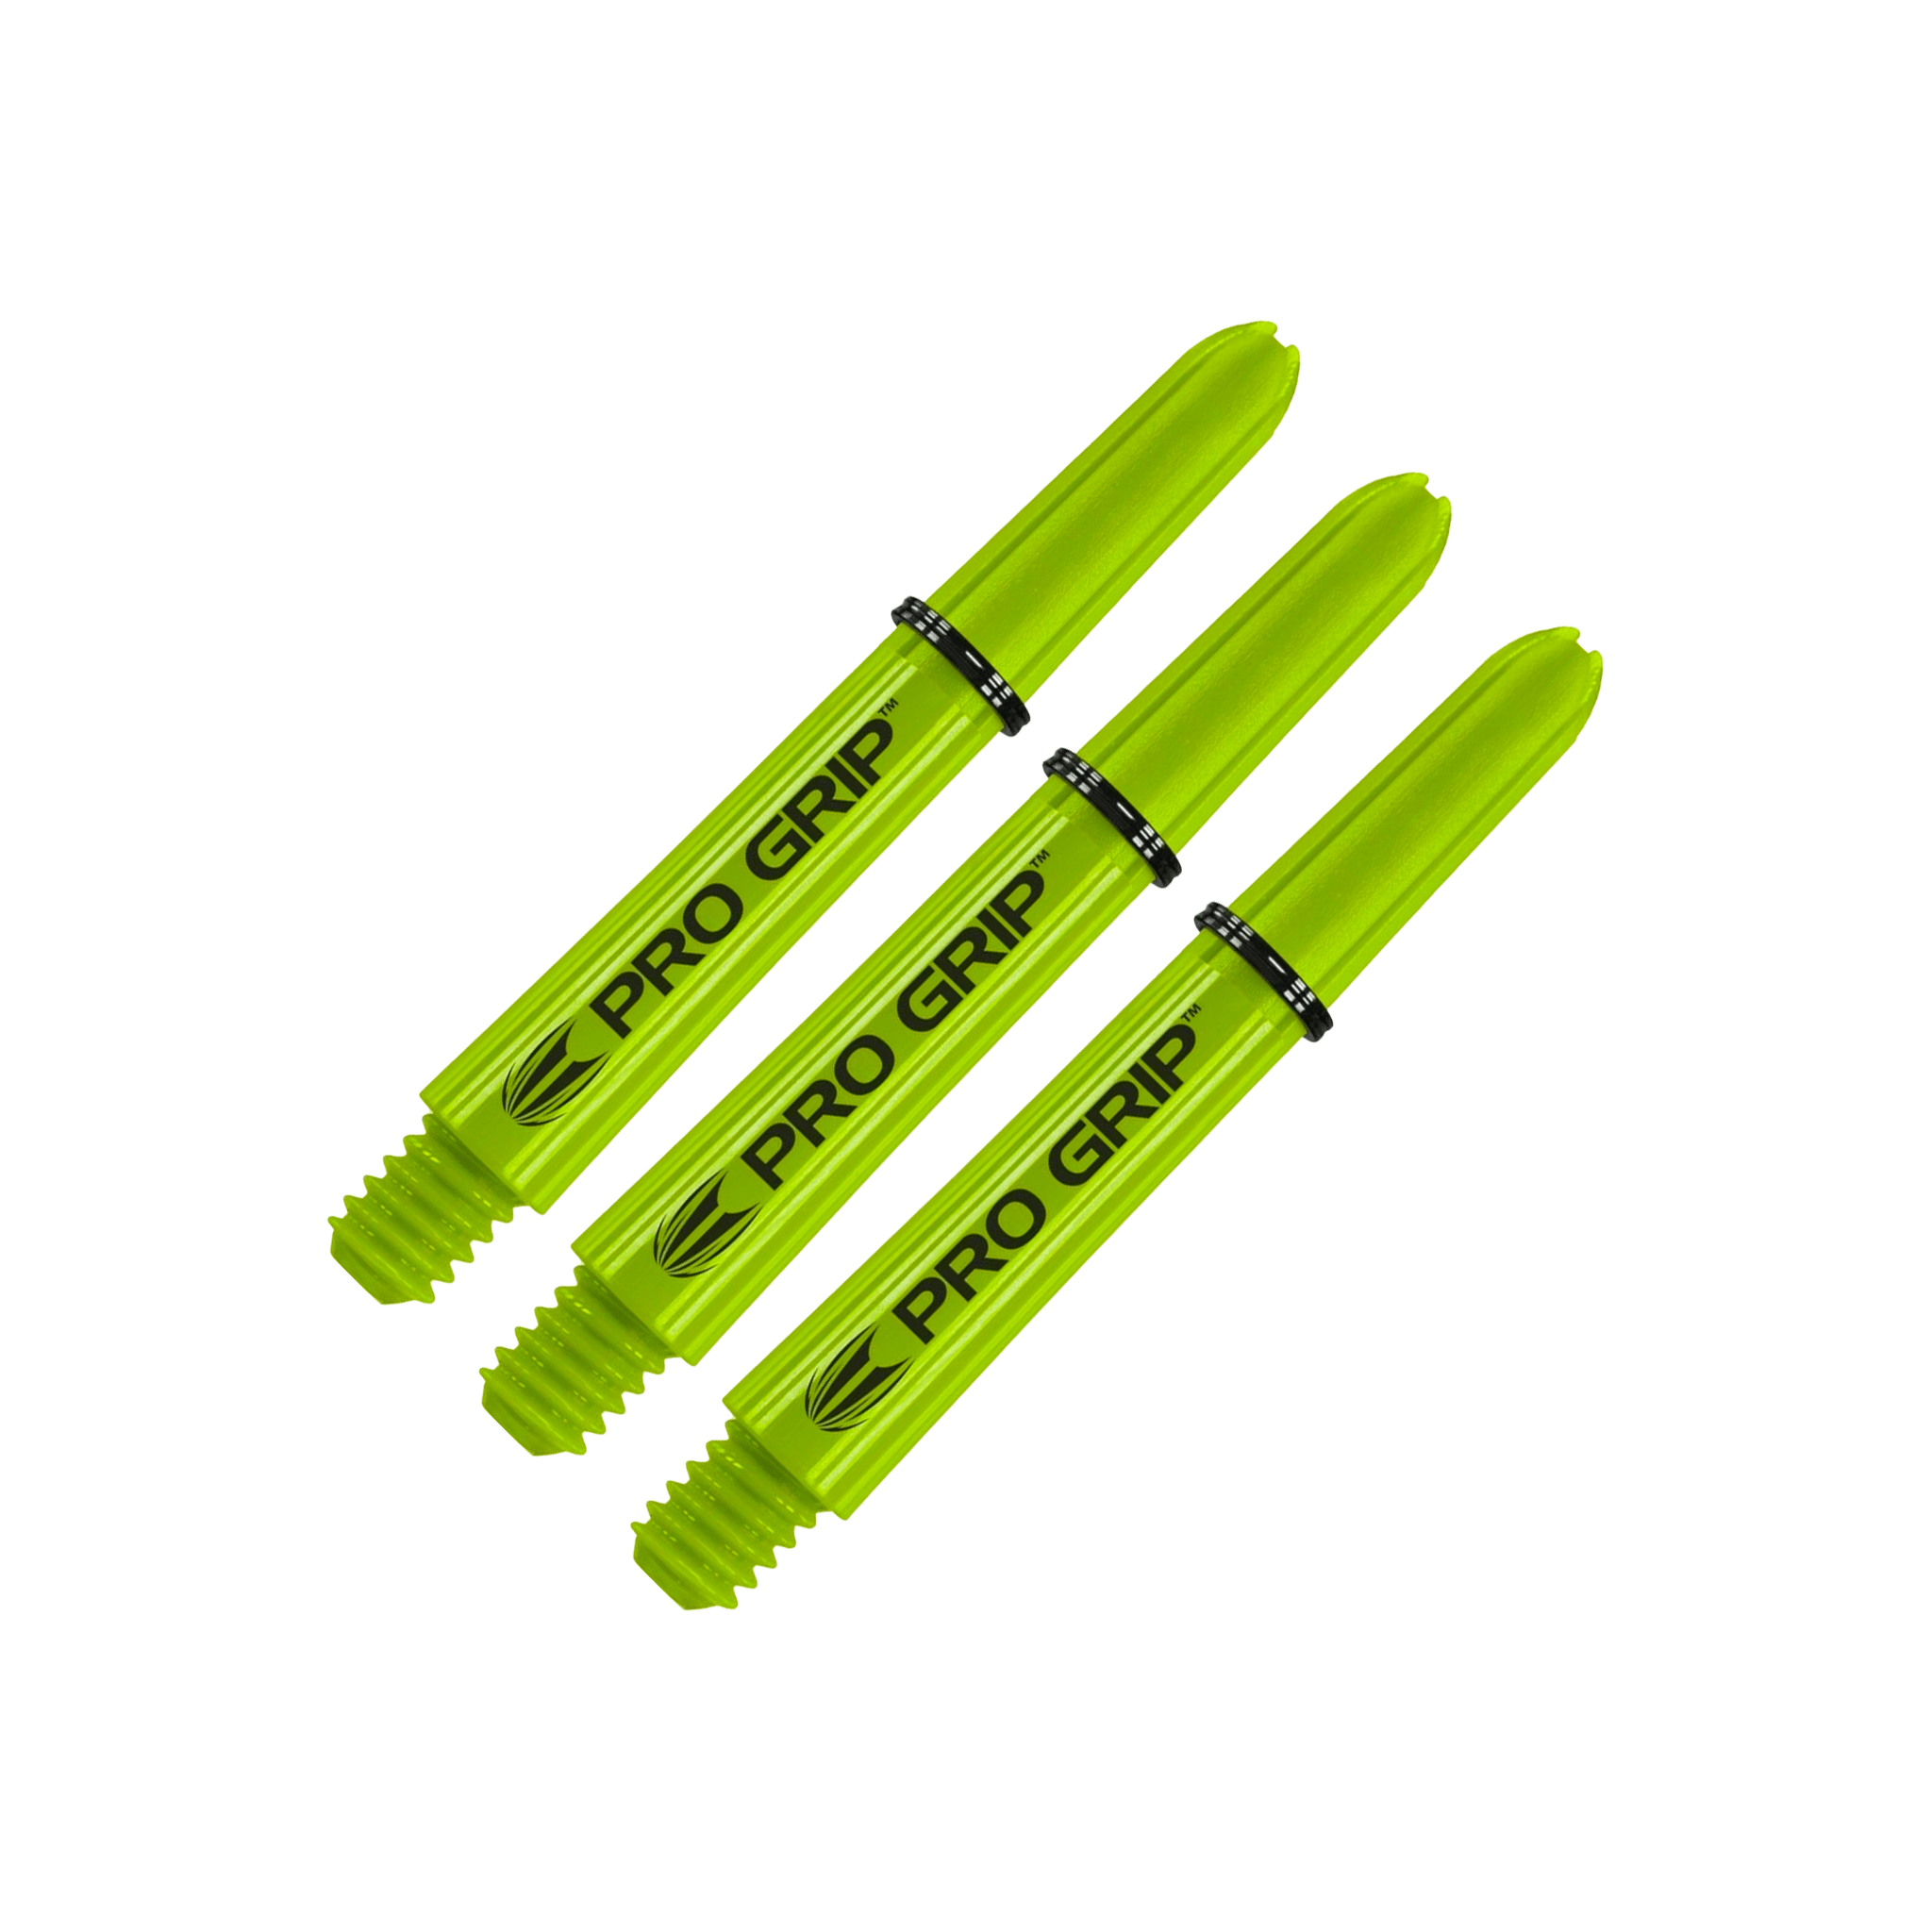 Target Pro Grip Short (34mm) Nylon Dart Shafts Lime Shafts